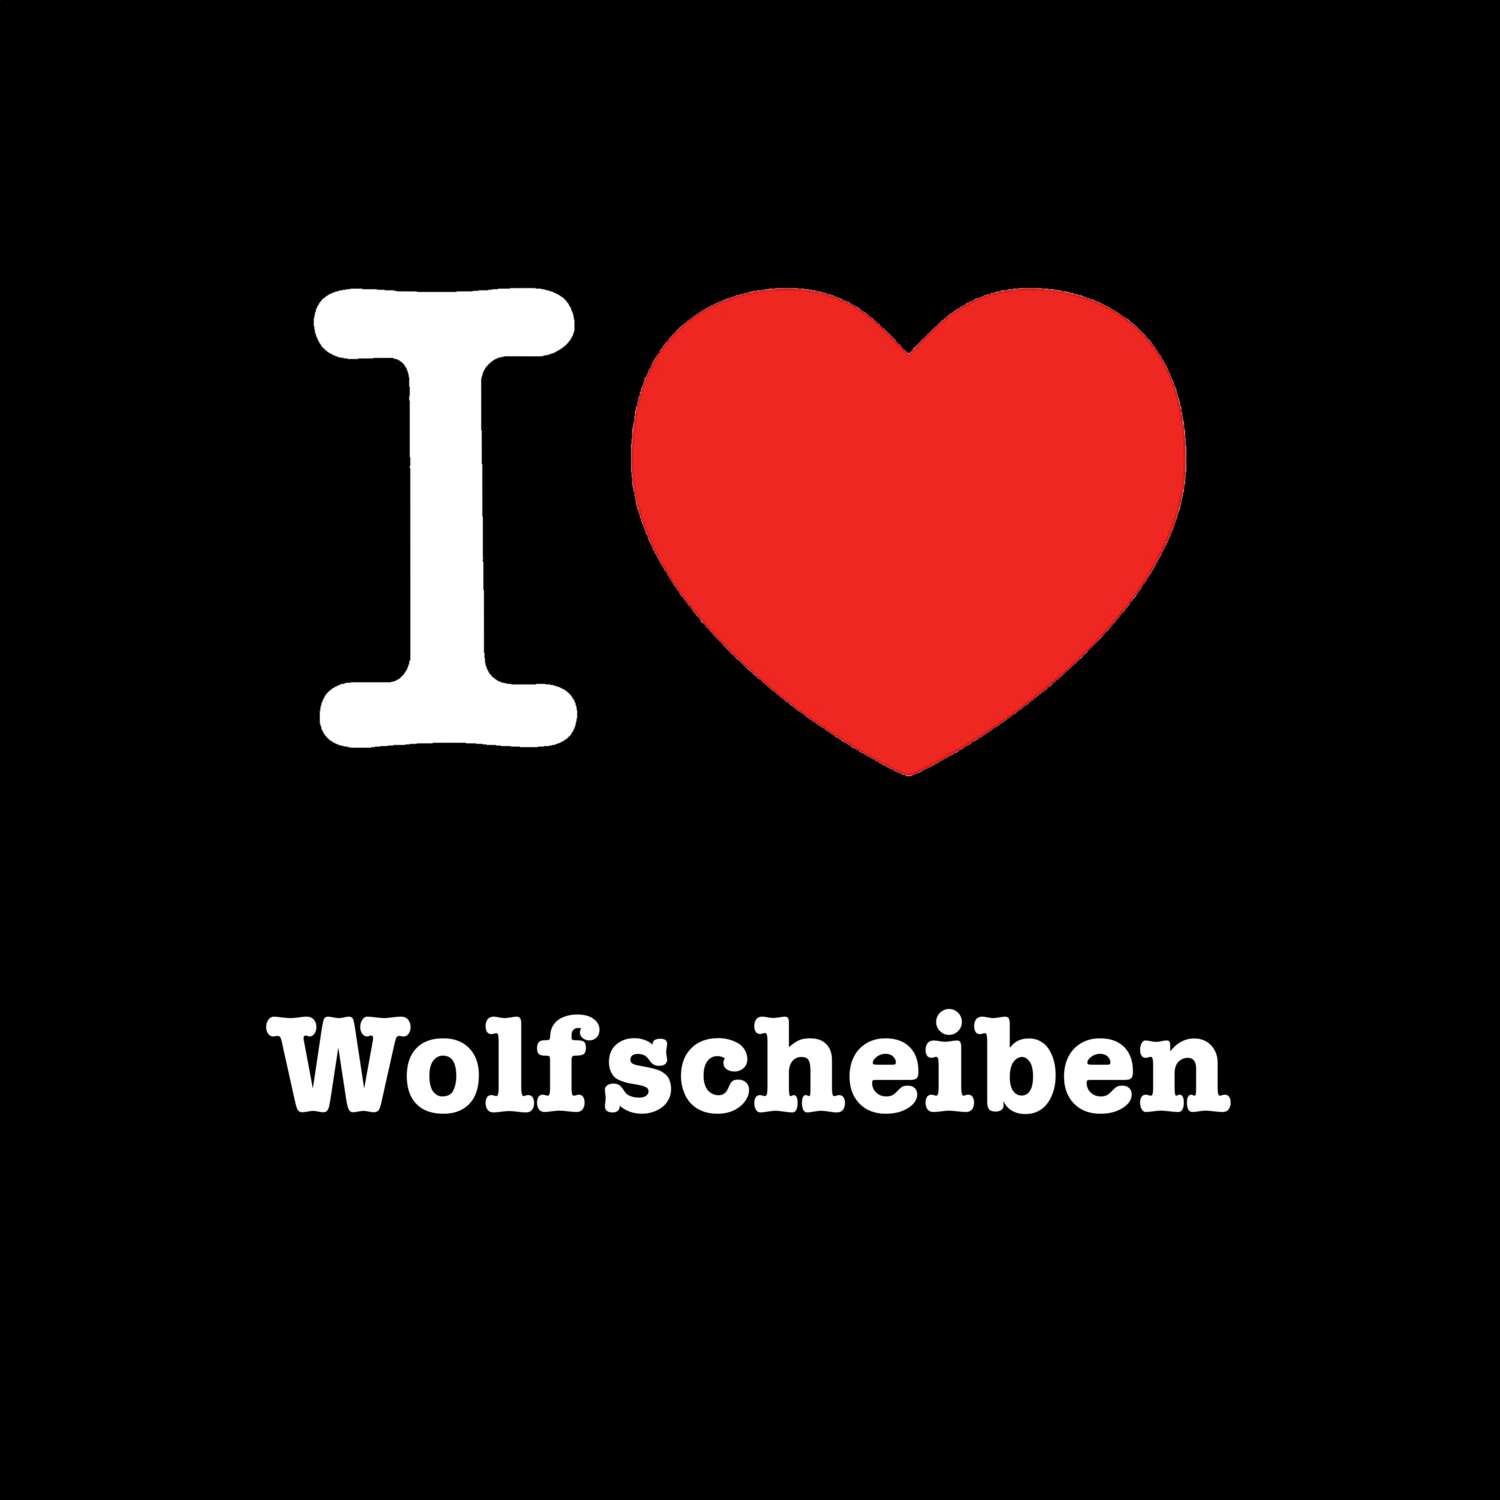 Wolfscheiben T-Shirt »I love«